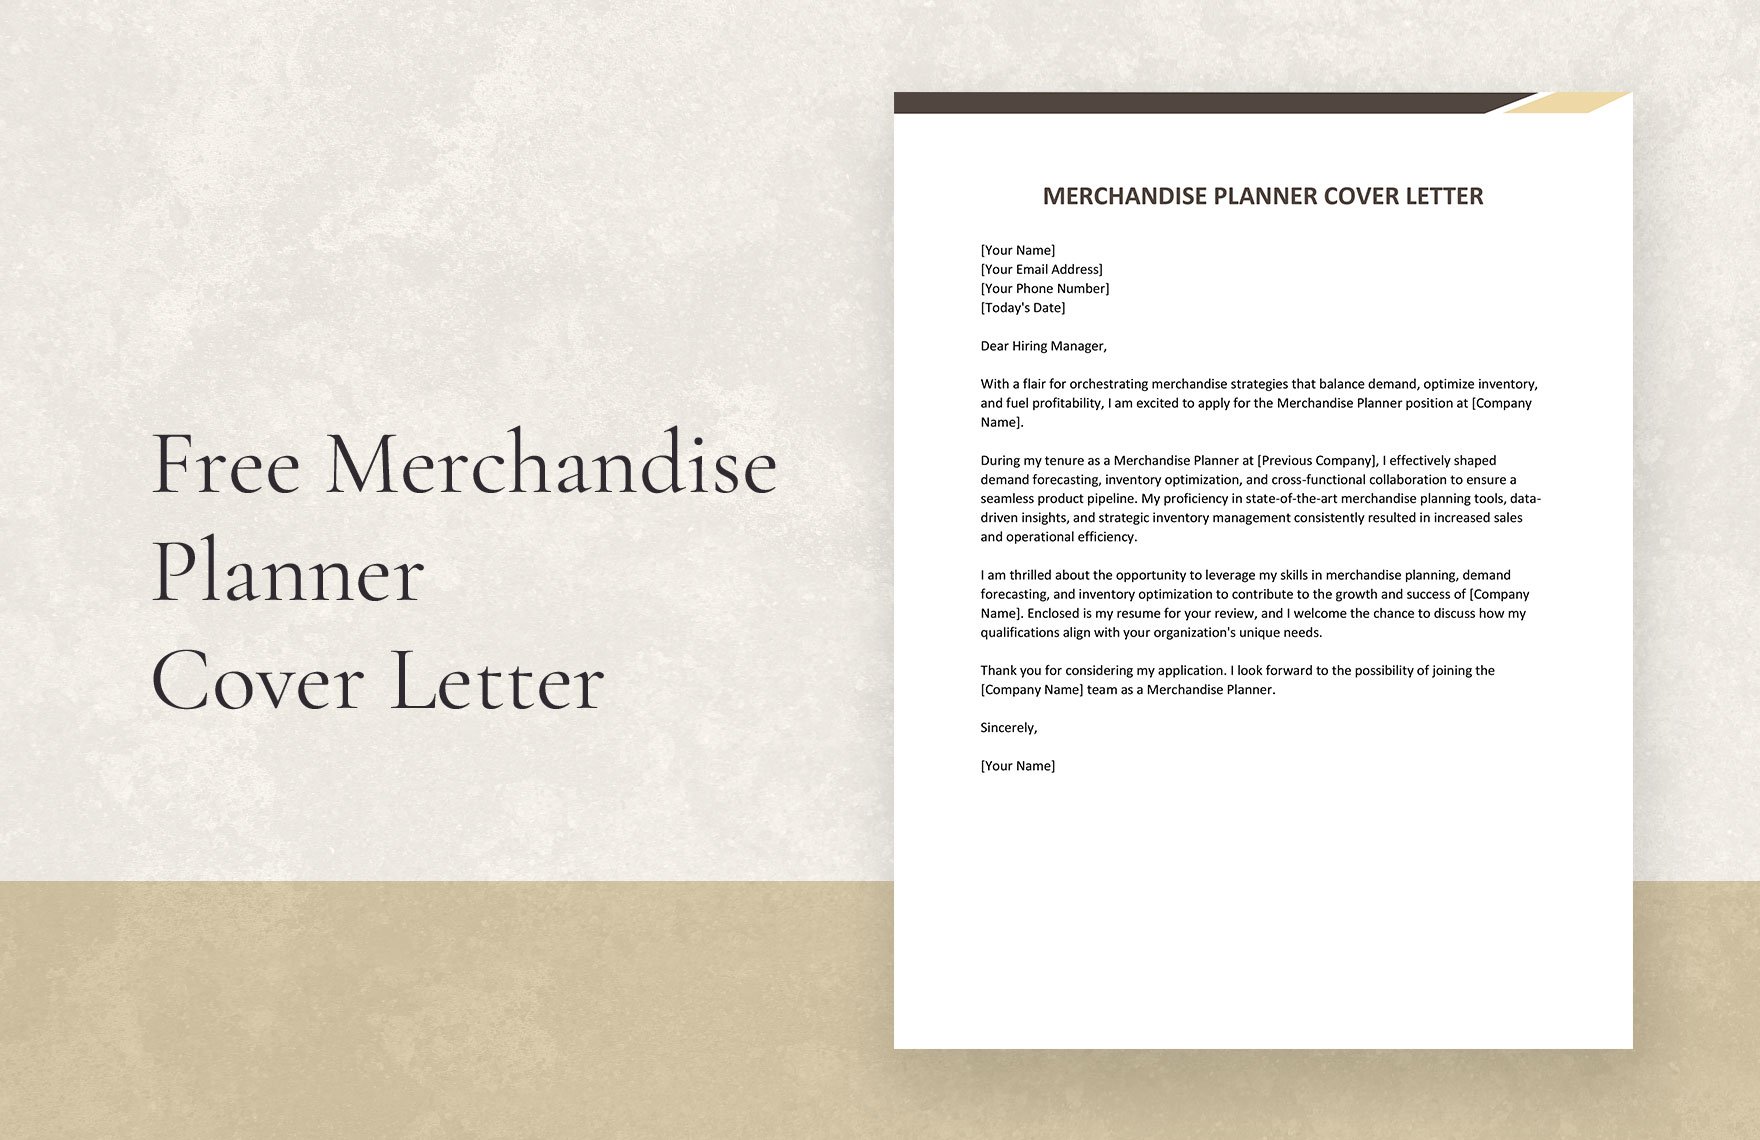 Merchandise Planner Cover Letter